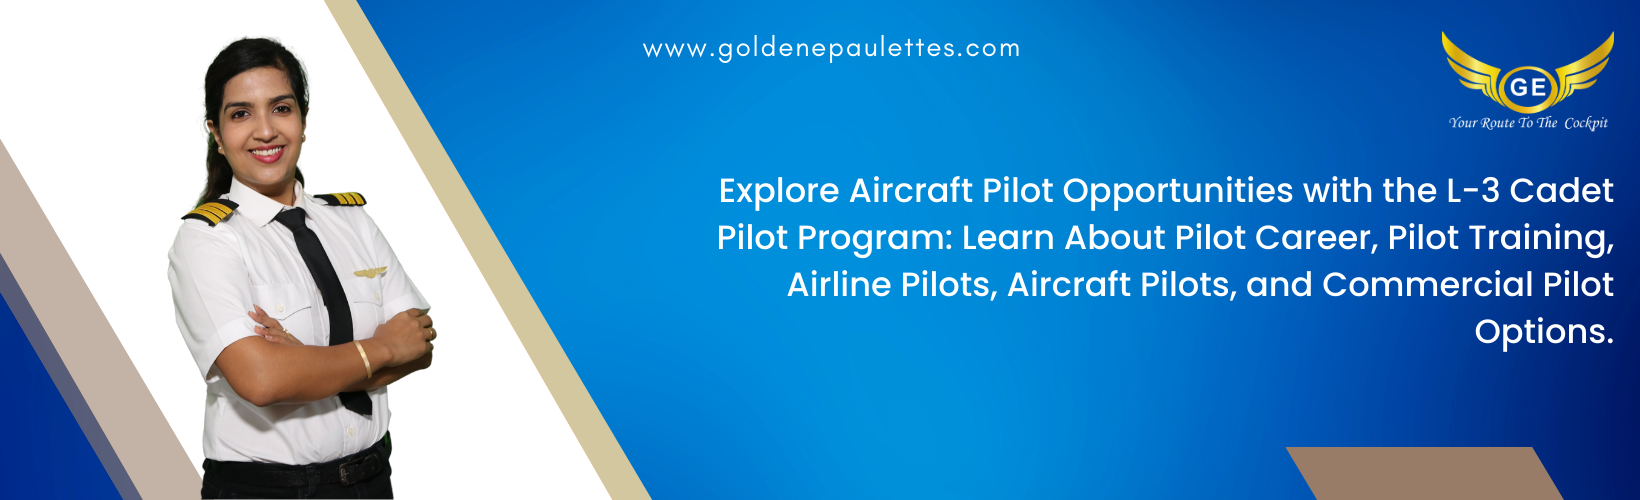 Aircraft Pilot Opportunities with the L-3 Cadet Pilot Program